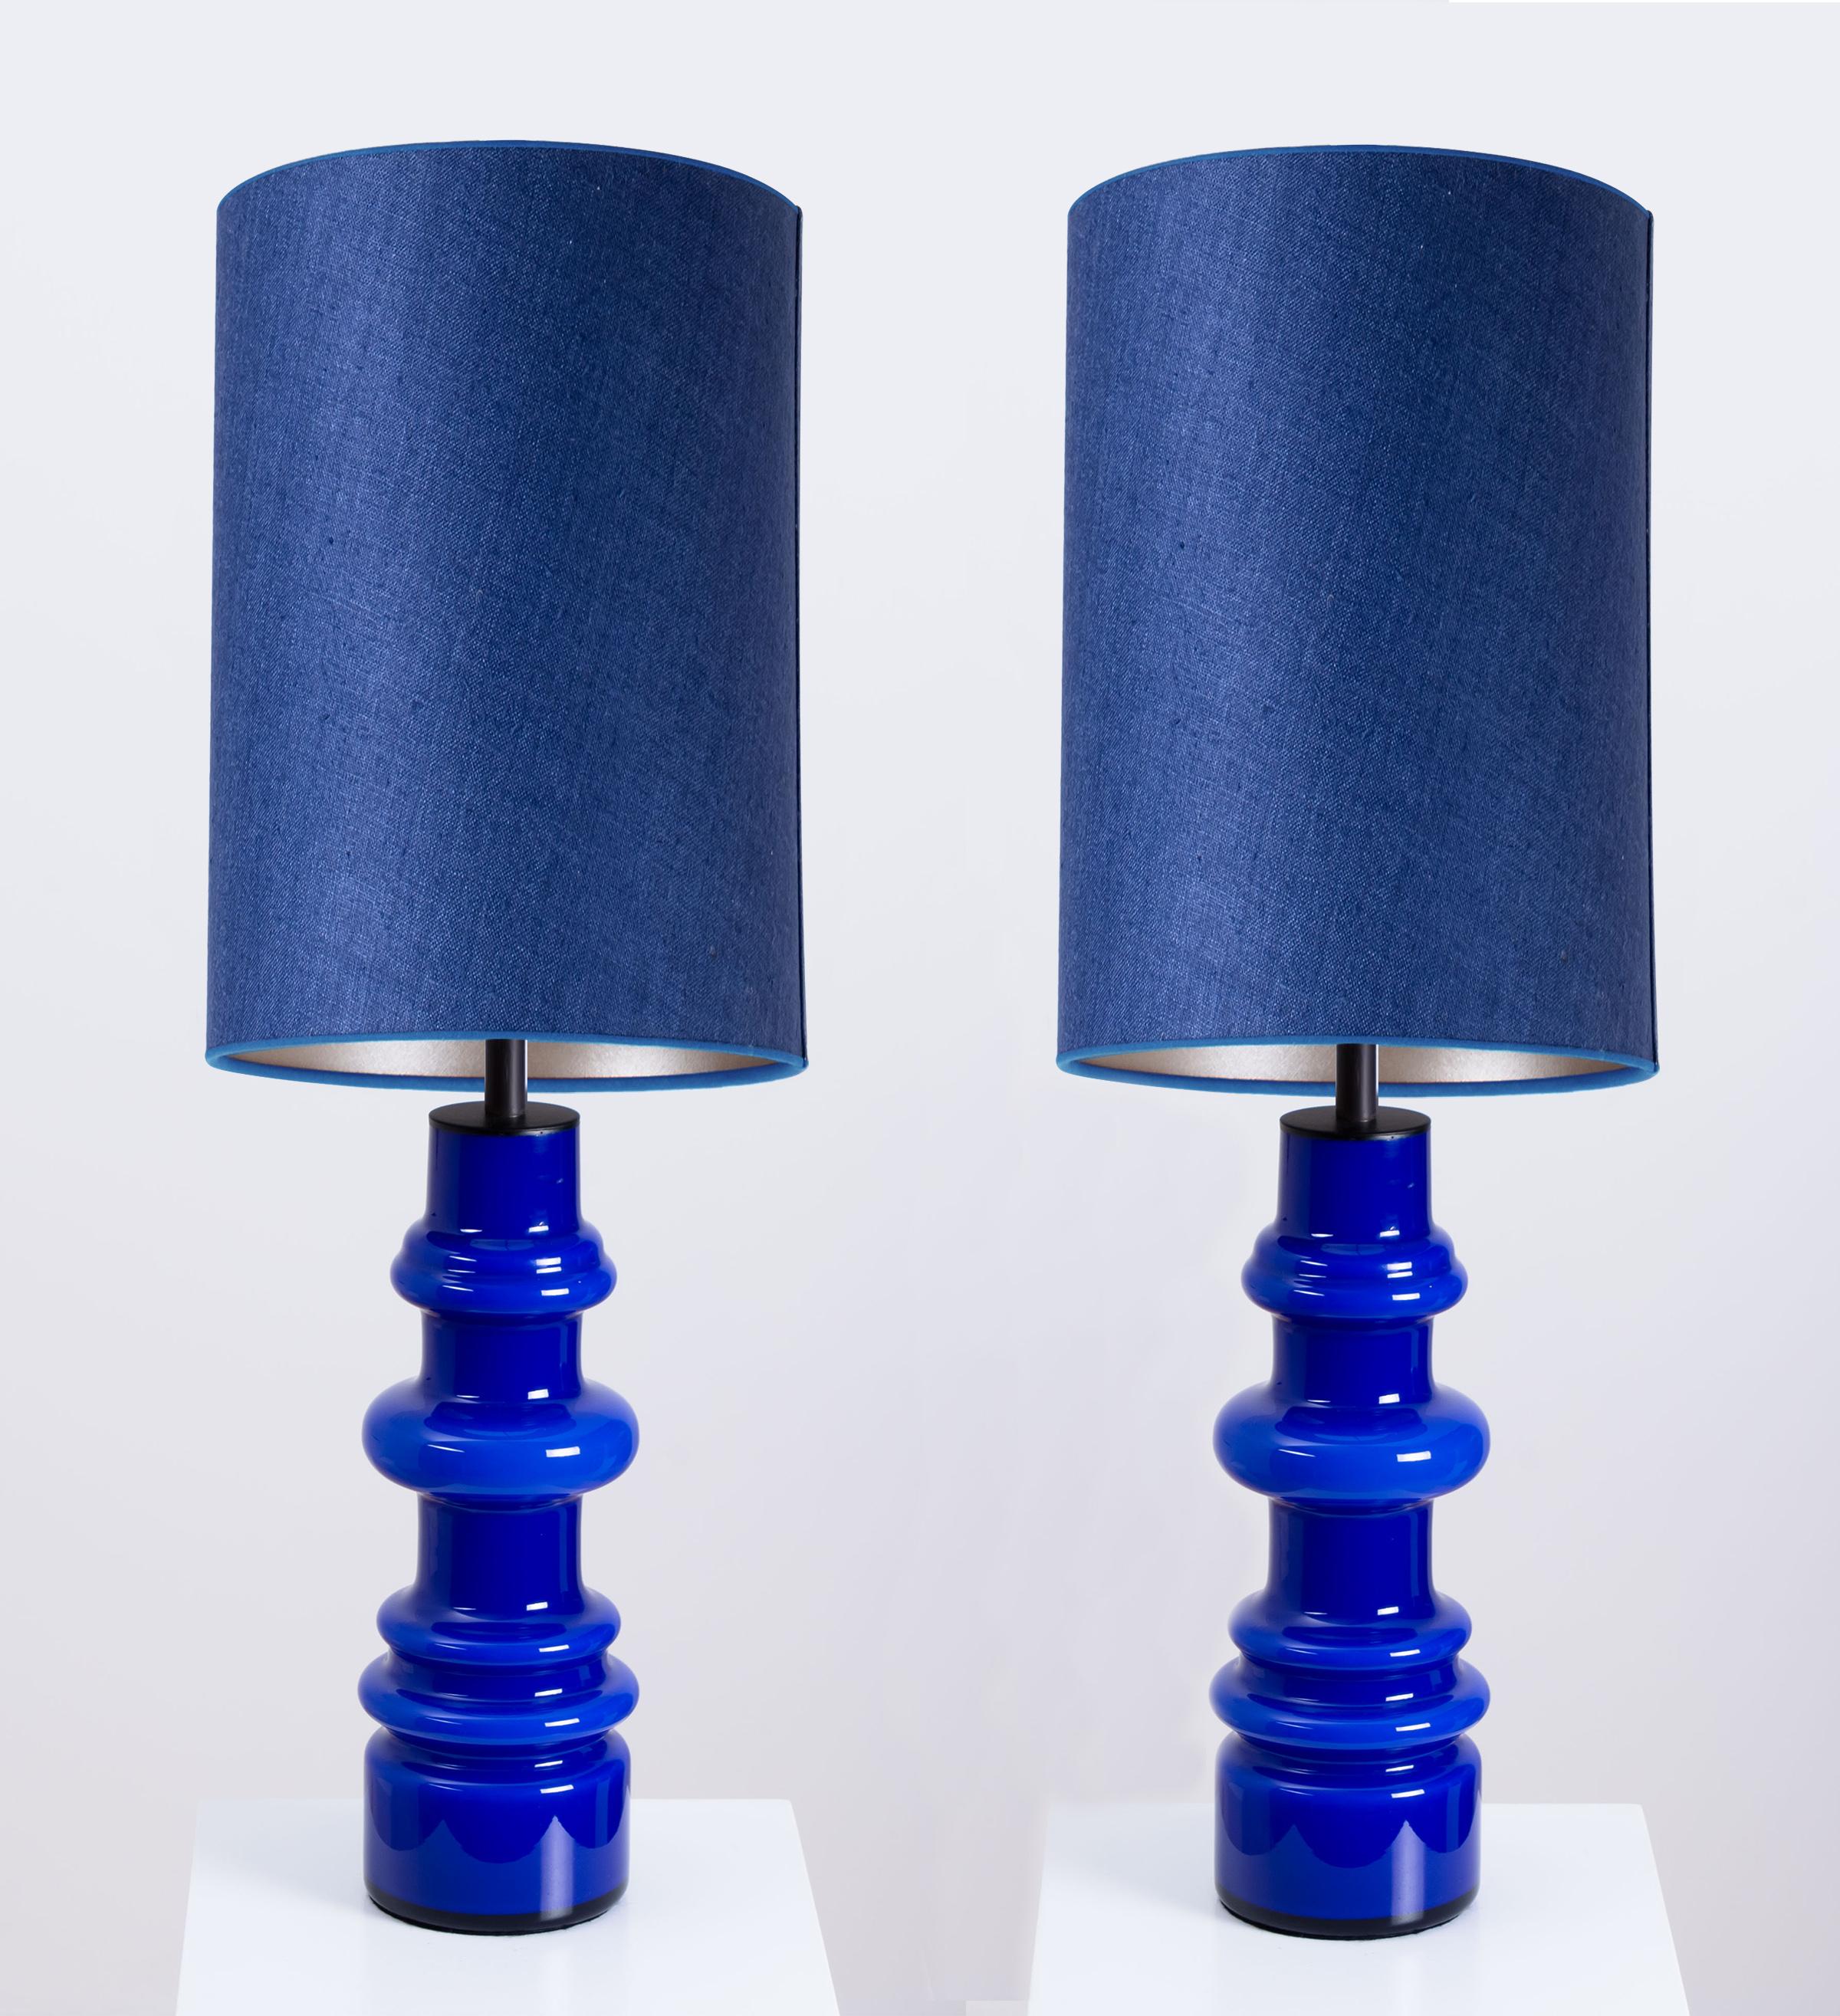 Schönes Paar Tischlampen aus Glas von Holmegaard, Dänemark, 1960er Jahre. Skulpturale Stücke aus handgefertigter Keramik in persischen Blautönen. Mit neuen, speziell angefertigten blauen Seidenlampenschirmen mit warmem gold/silbernen Innenschirm von